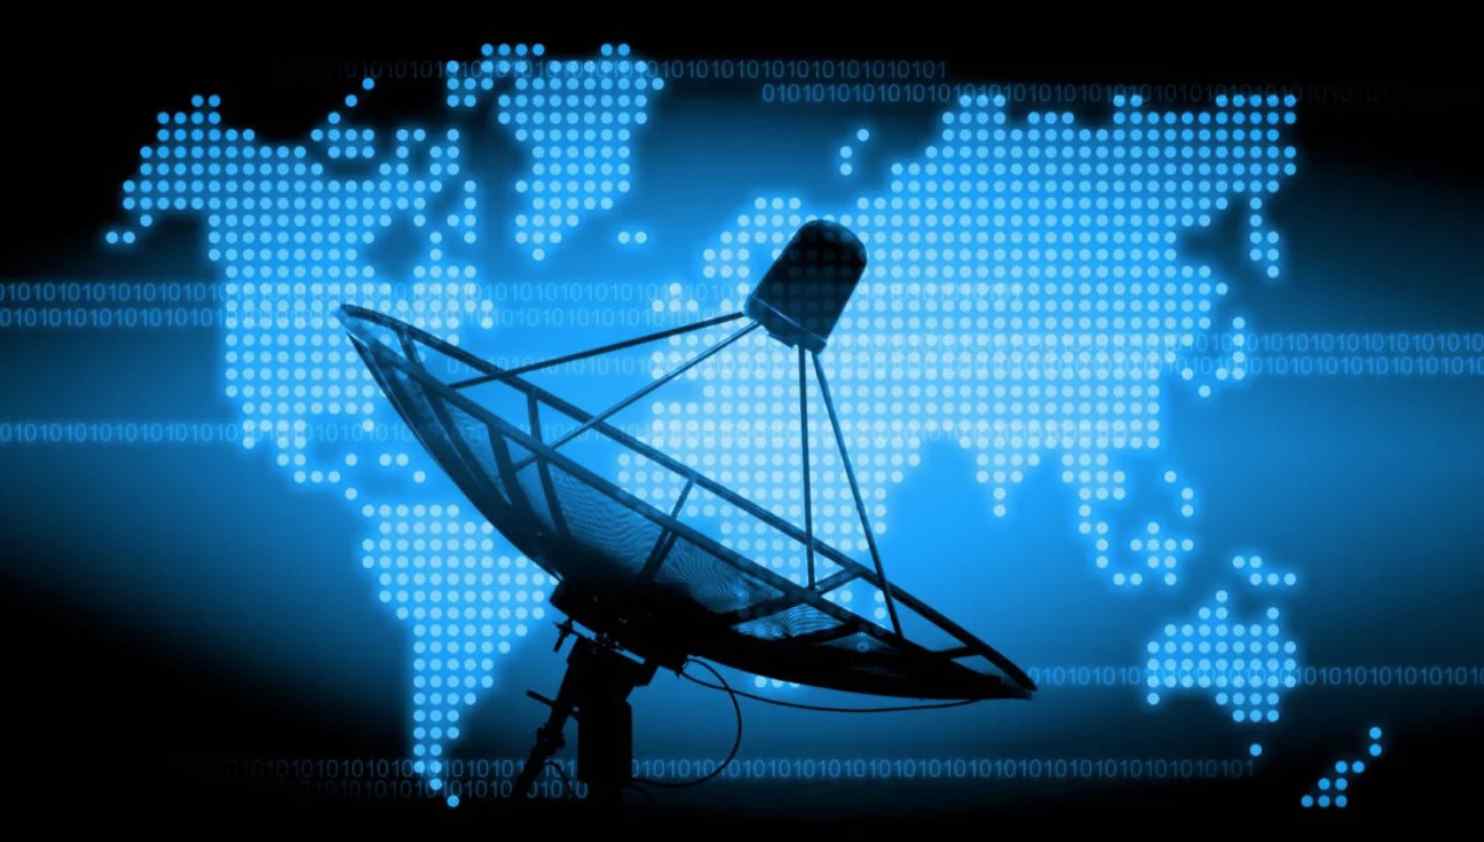 Хакерская группировка захватила контроль над спутниками и операторами связи